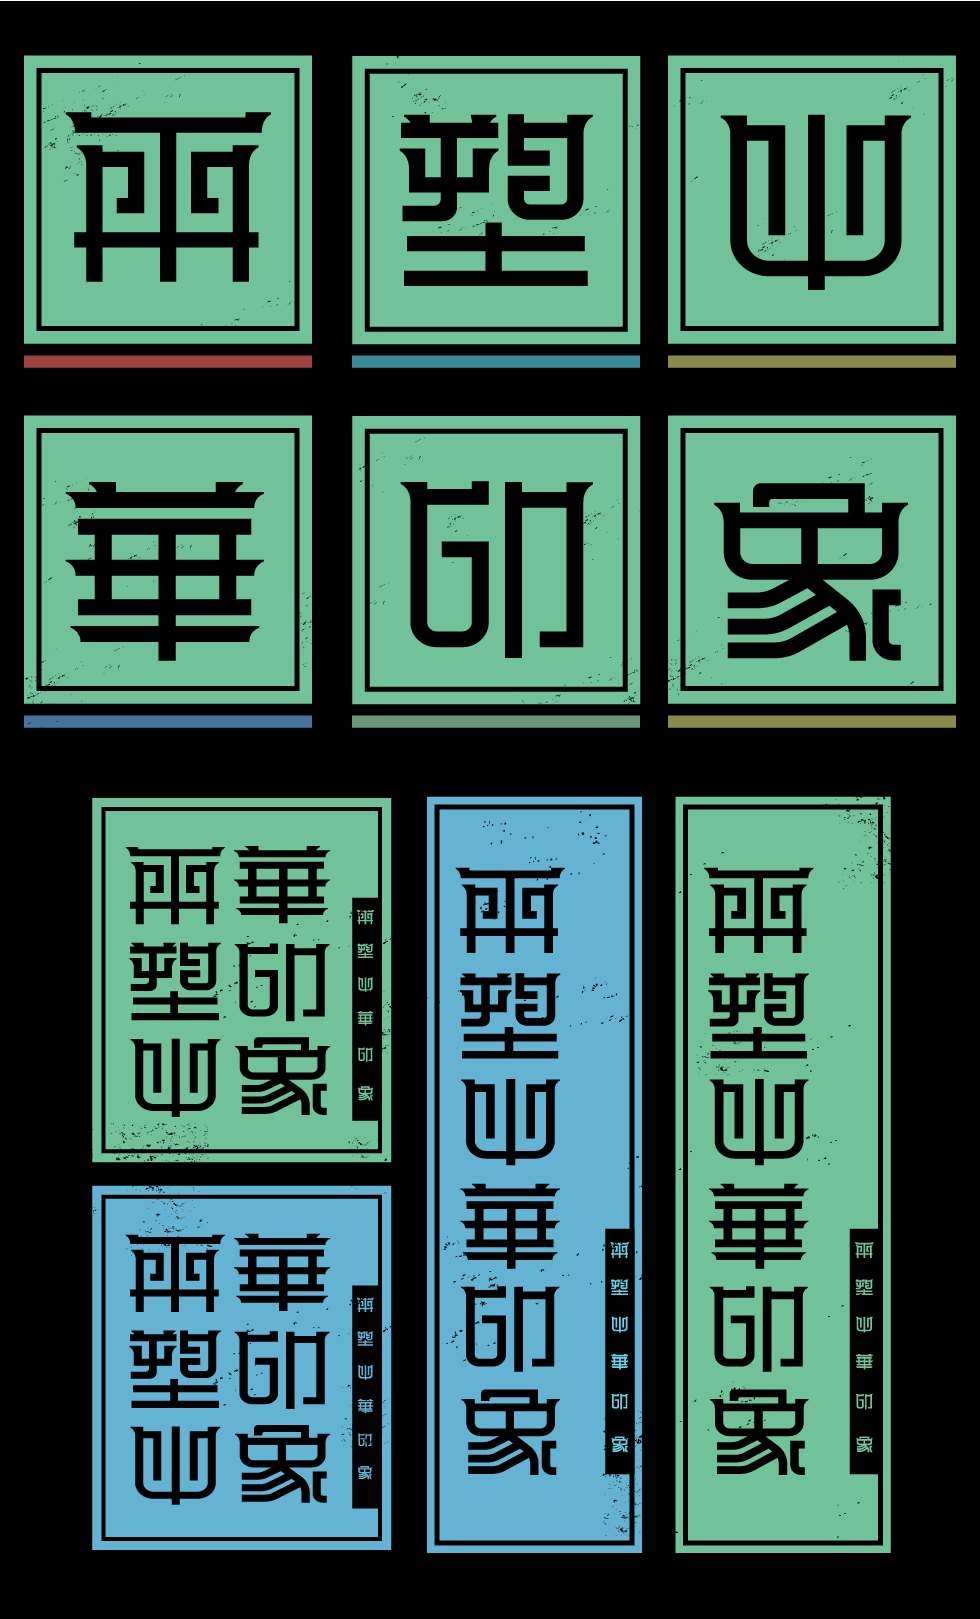 发现中纹之美 —首届中华符号数字文化创意设计大赛作品